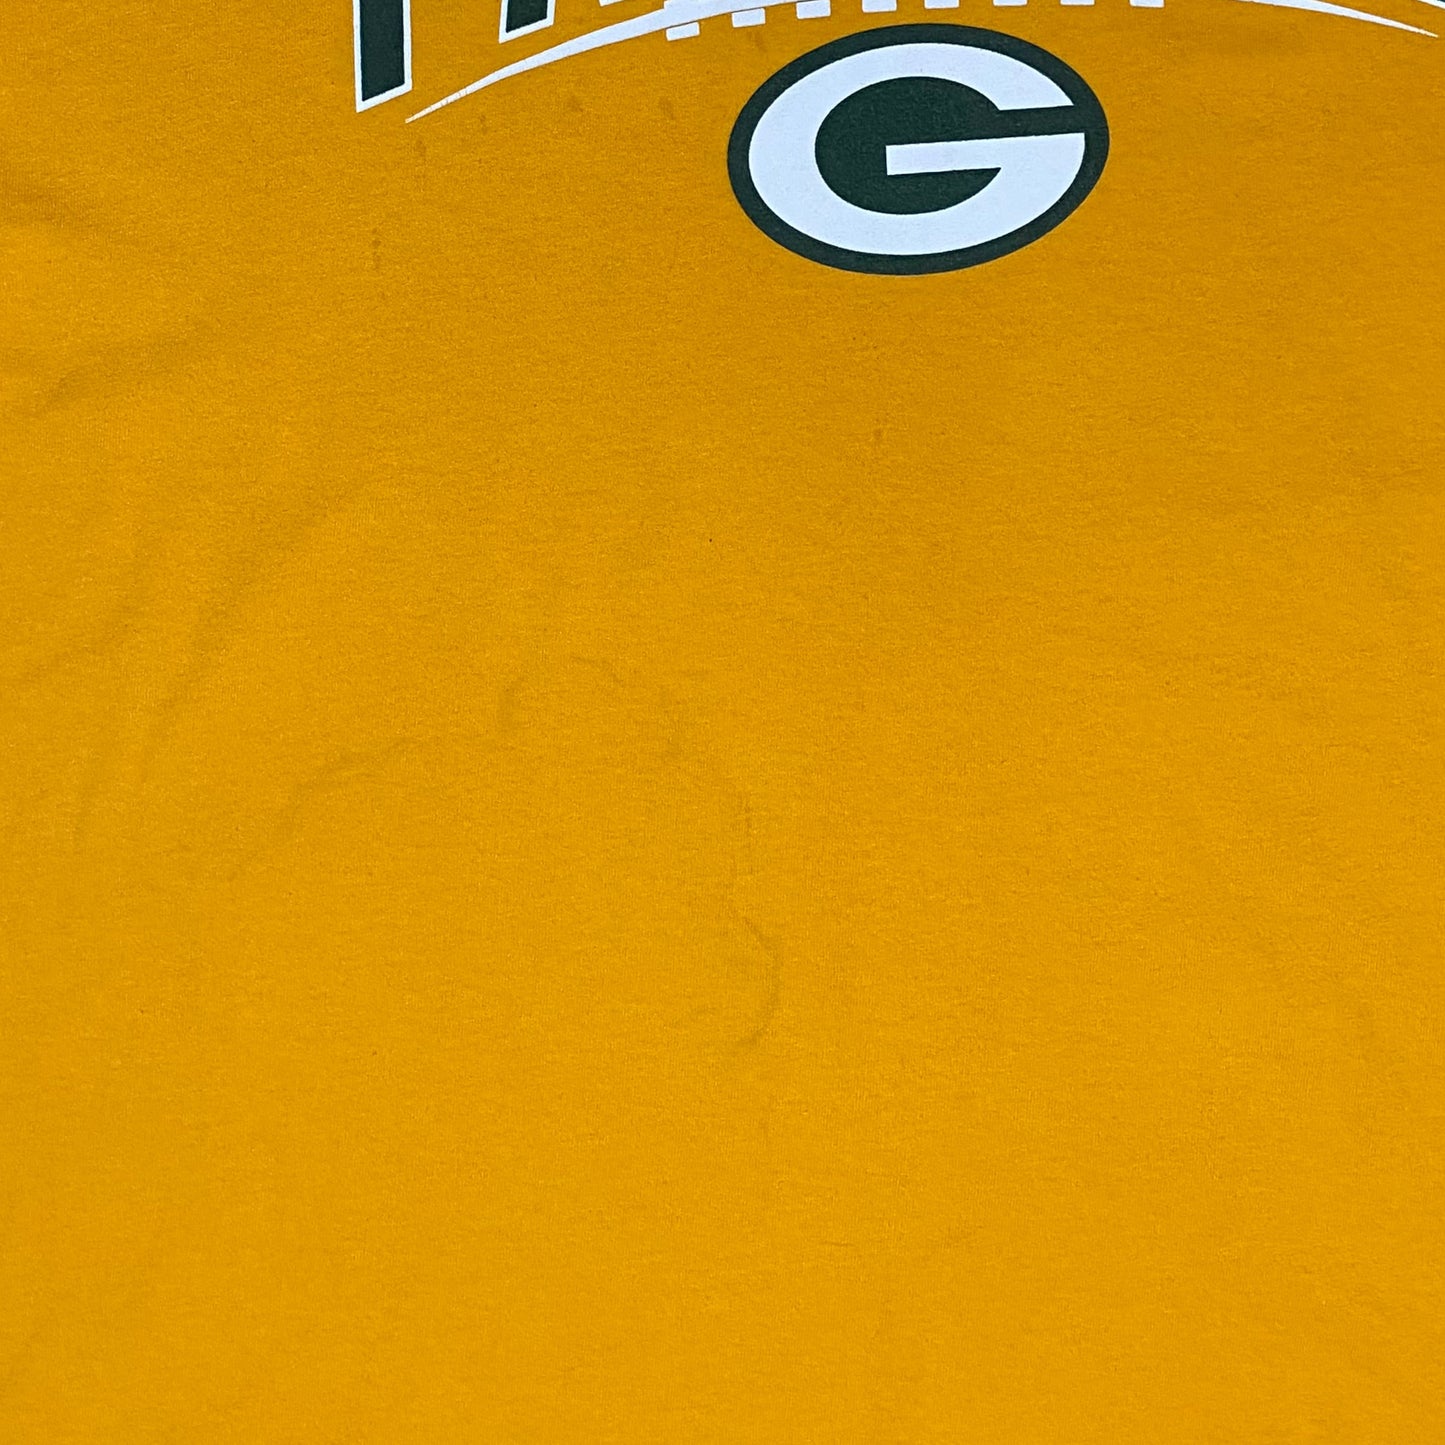 Packers t-shirt - 2XL